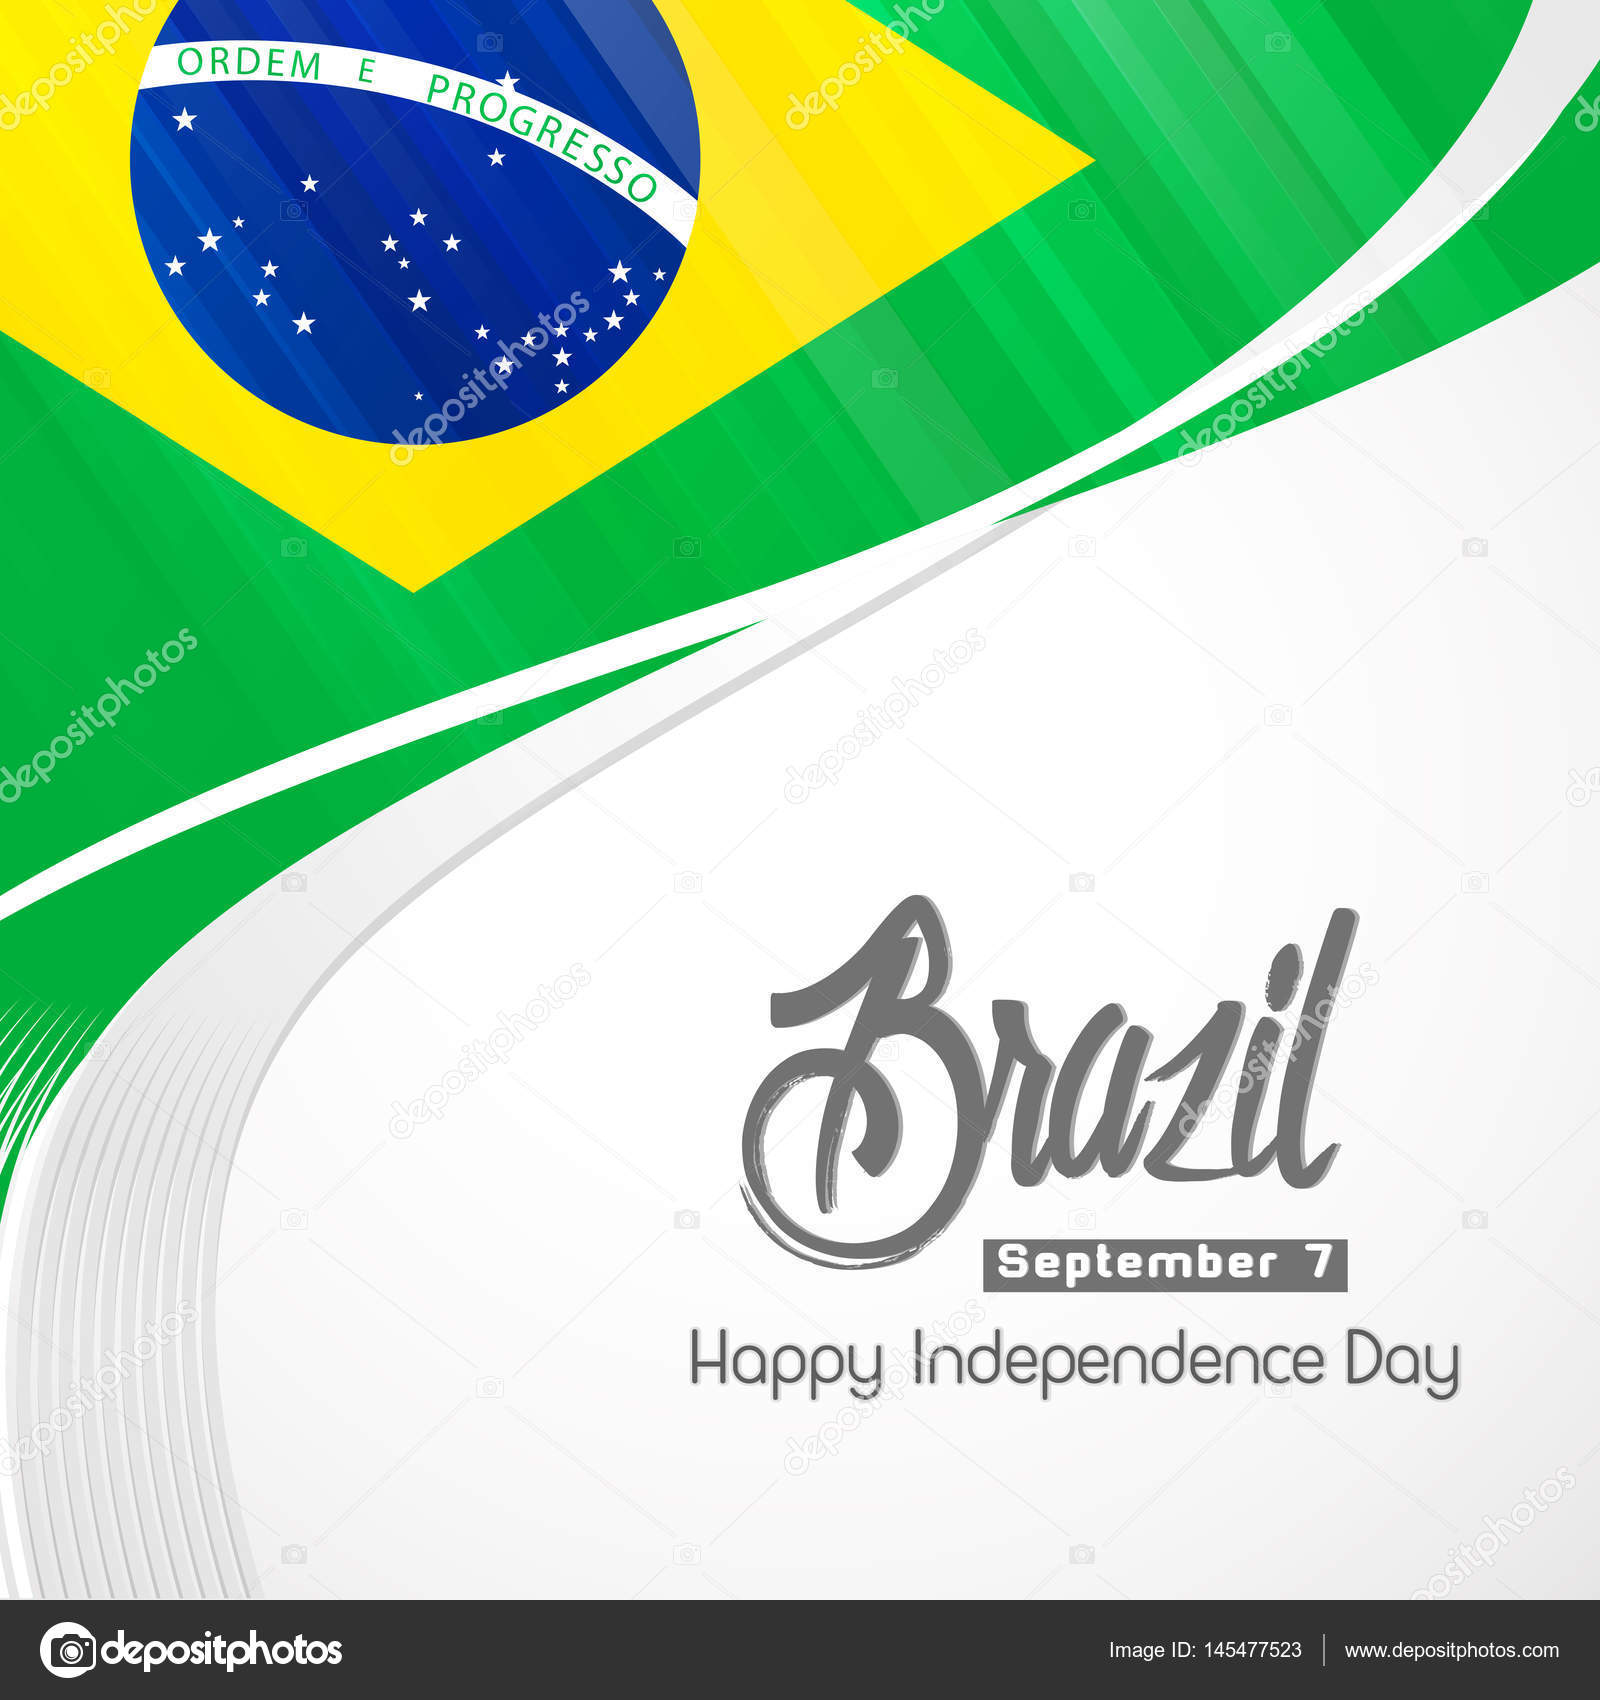 Resultado de imagem para 7 de setembro independencia do brasil 2018 cartazes e logos